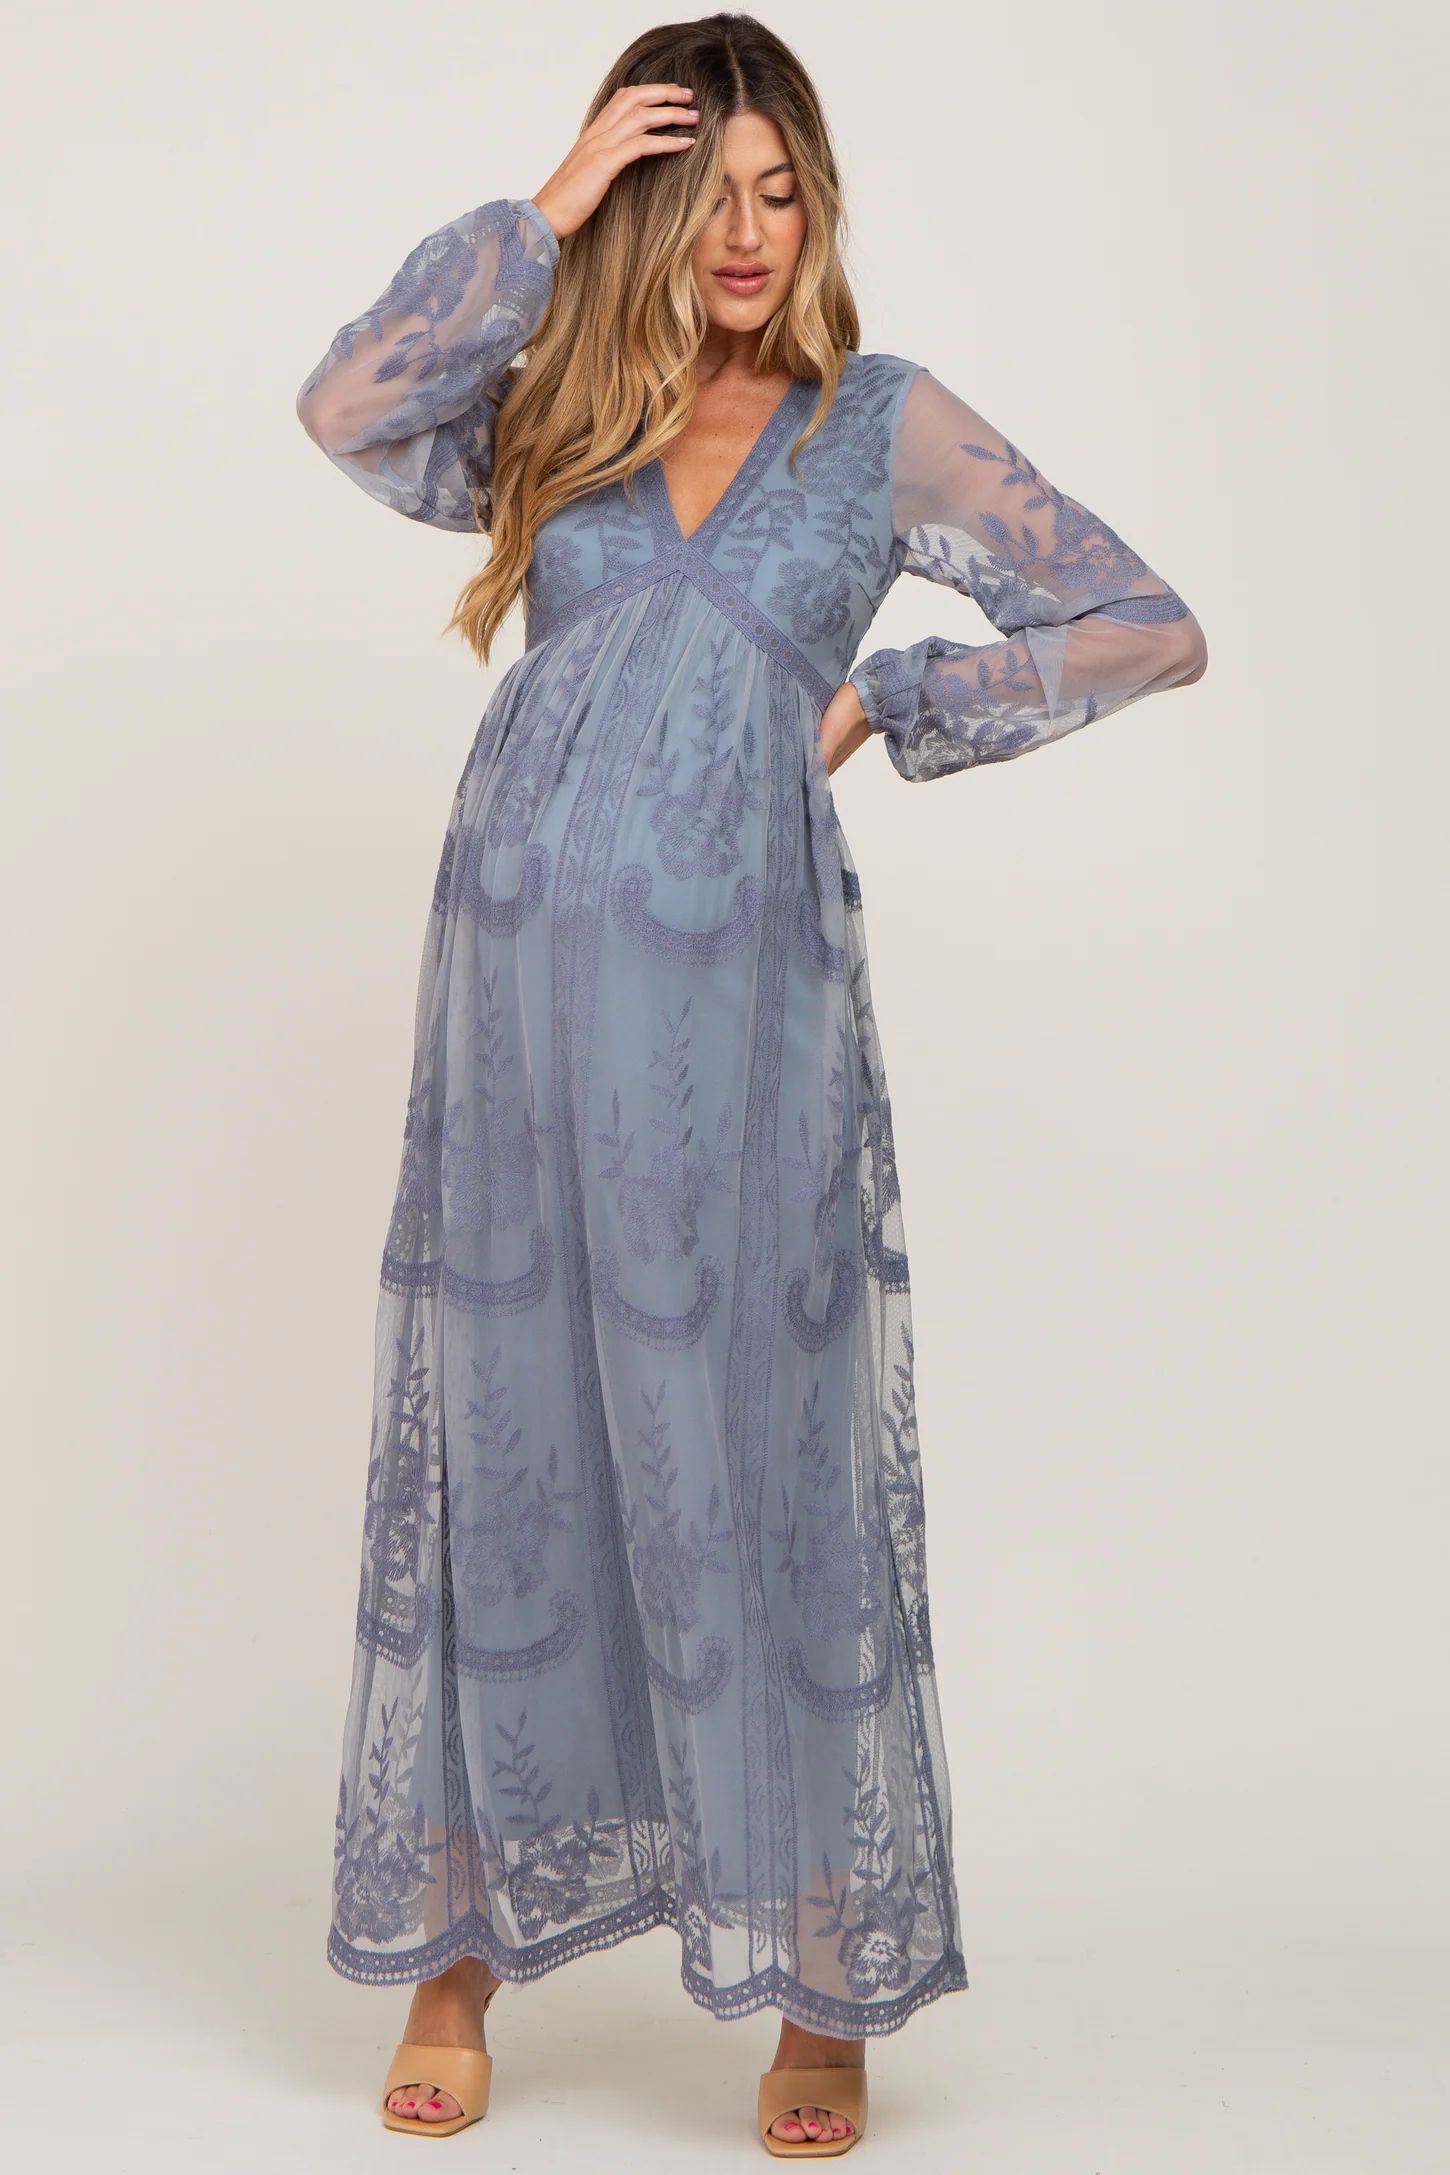 PinkBlush Blue Grey Lace Mesh Overlay Long Sleeve Maternity Maxi Dress | PinkBlush Maternity